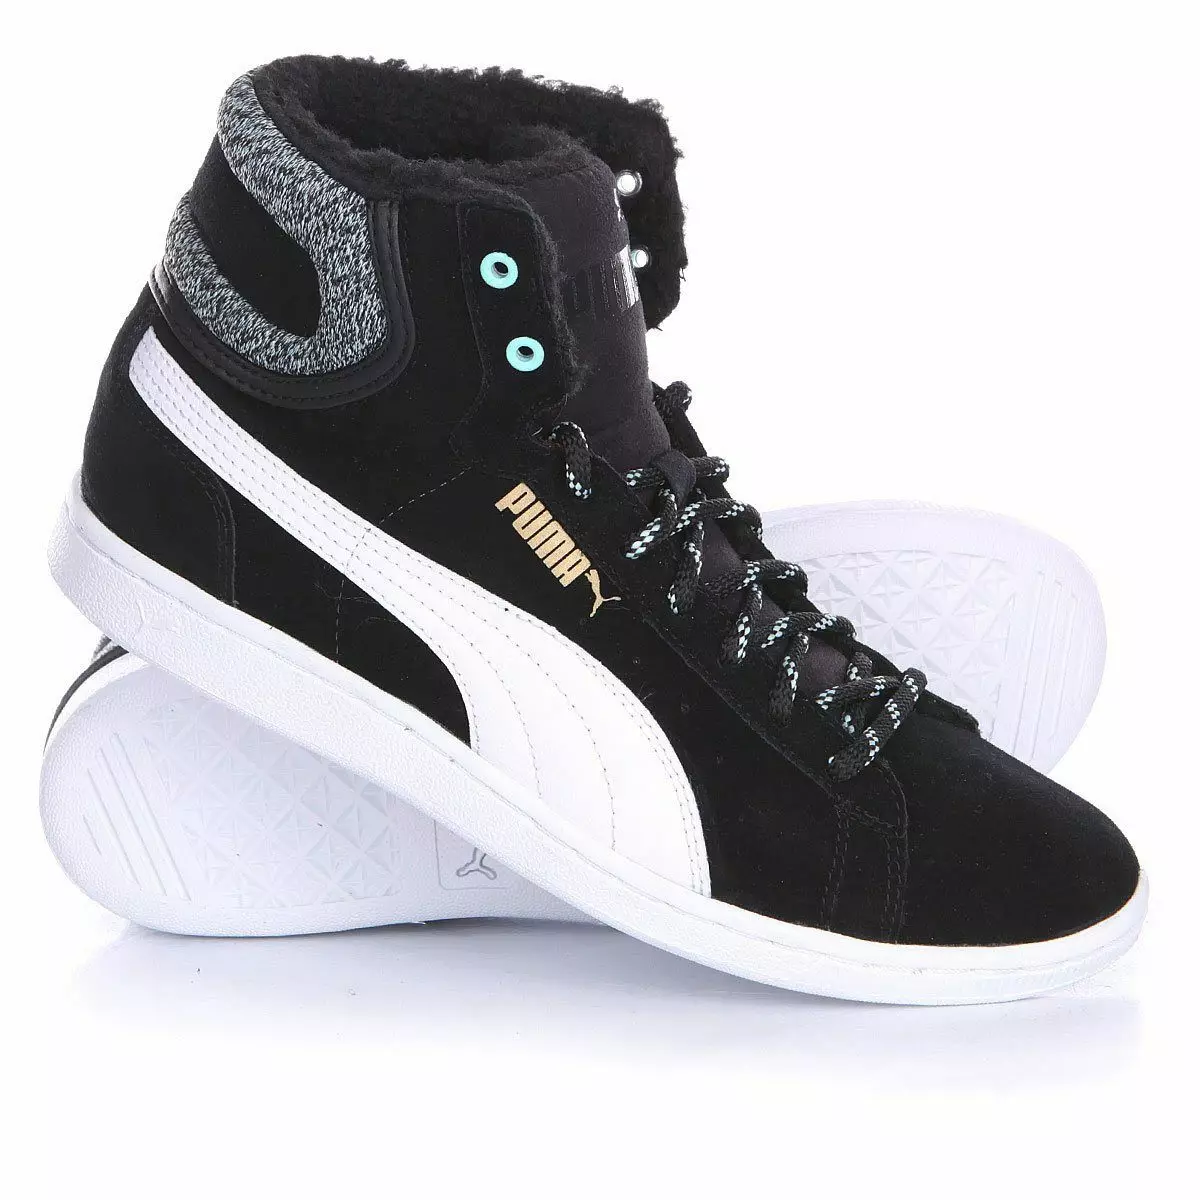 Sneakers Gaeaf Puma (38 Lluniau): Modelau ar gyfer y gaeaf, Rihanna, yn gynnes gyda ffwr 2054_6